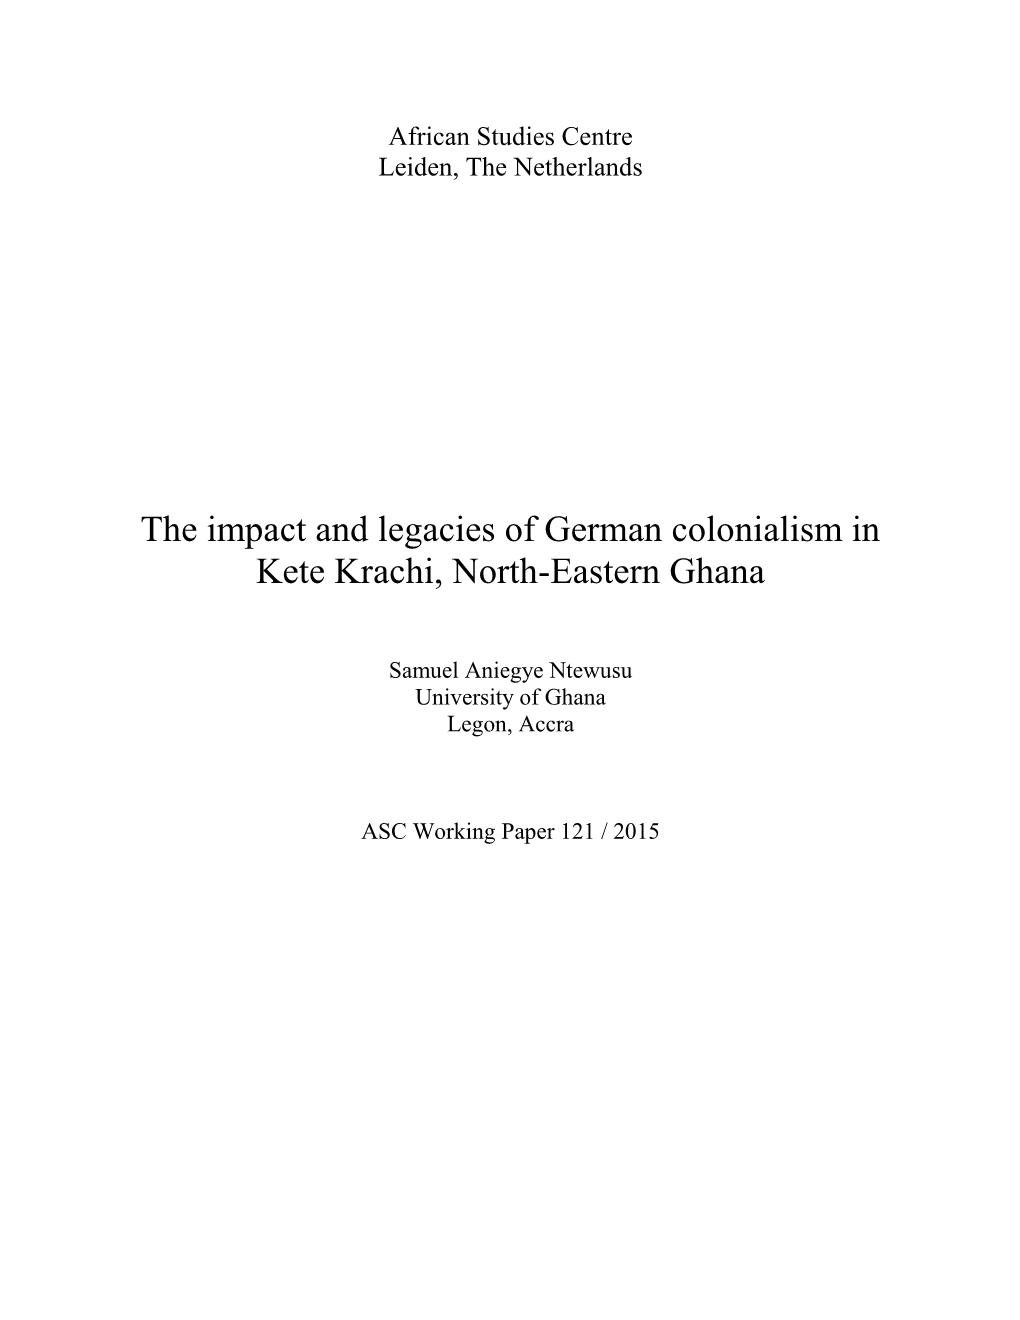 The Impact and Legacies of German Colonialism in Kete Krachi, North-Eastern Ghana